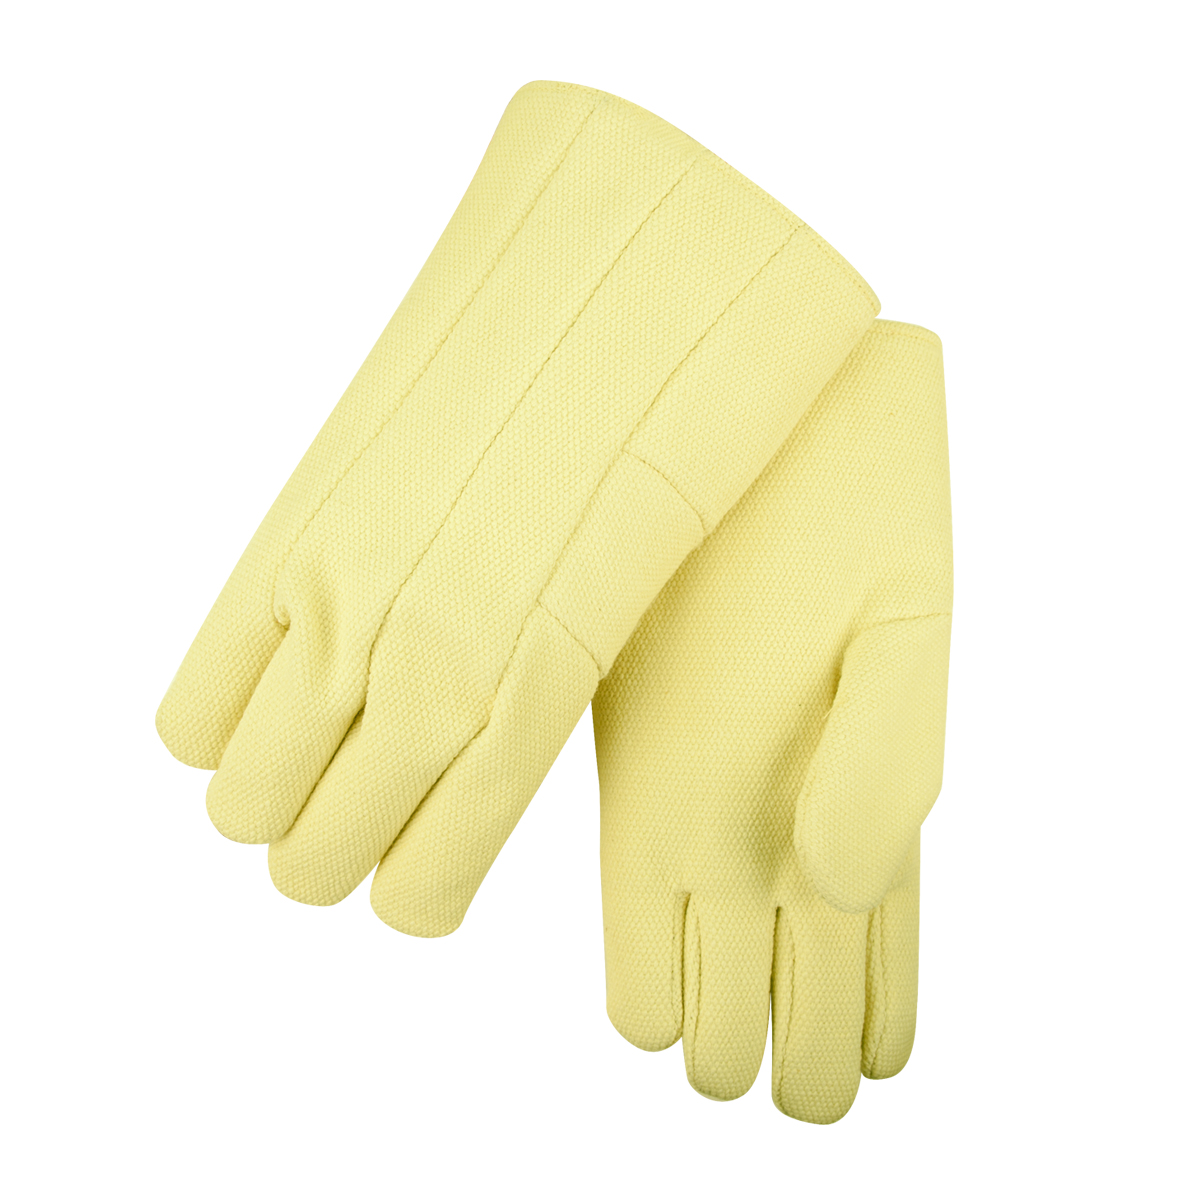 22 oz. DuPont® Kevlar® Hi-Temp Glove, 14" Length